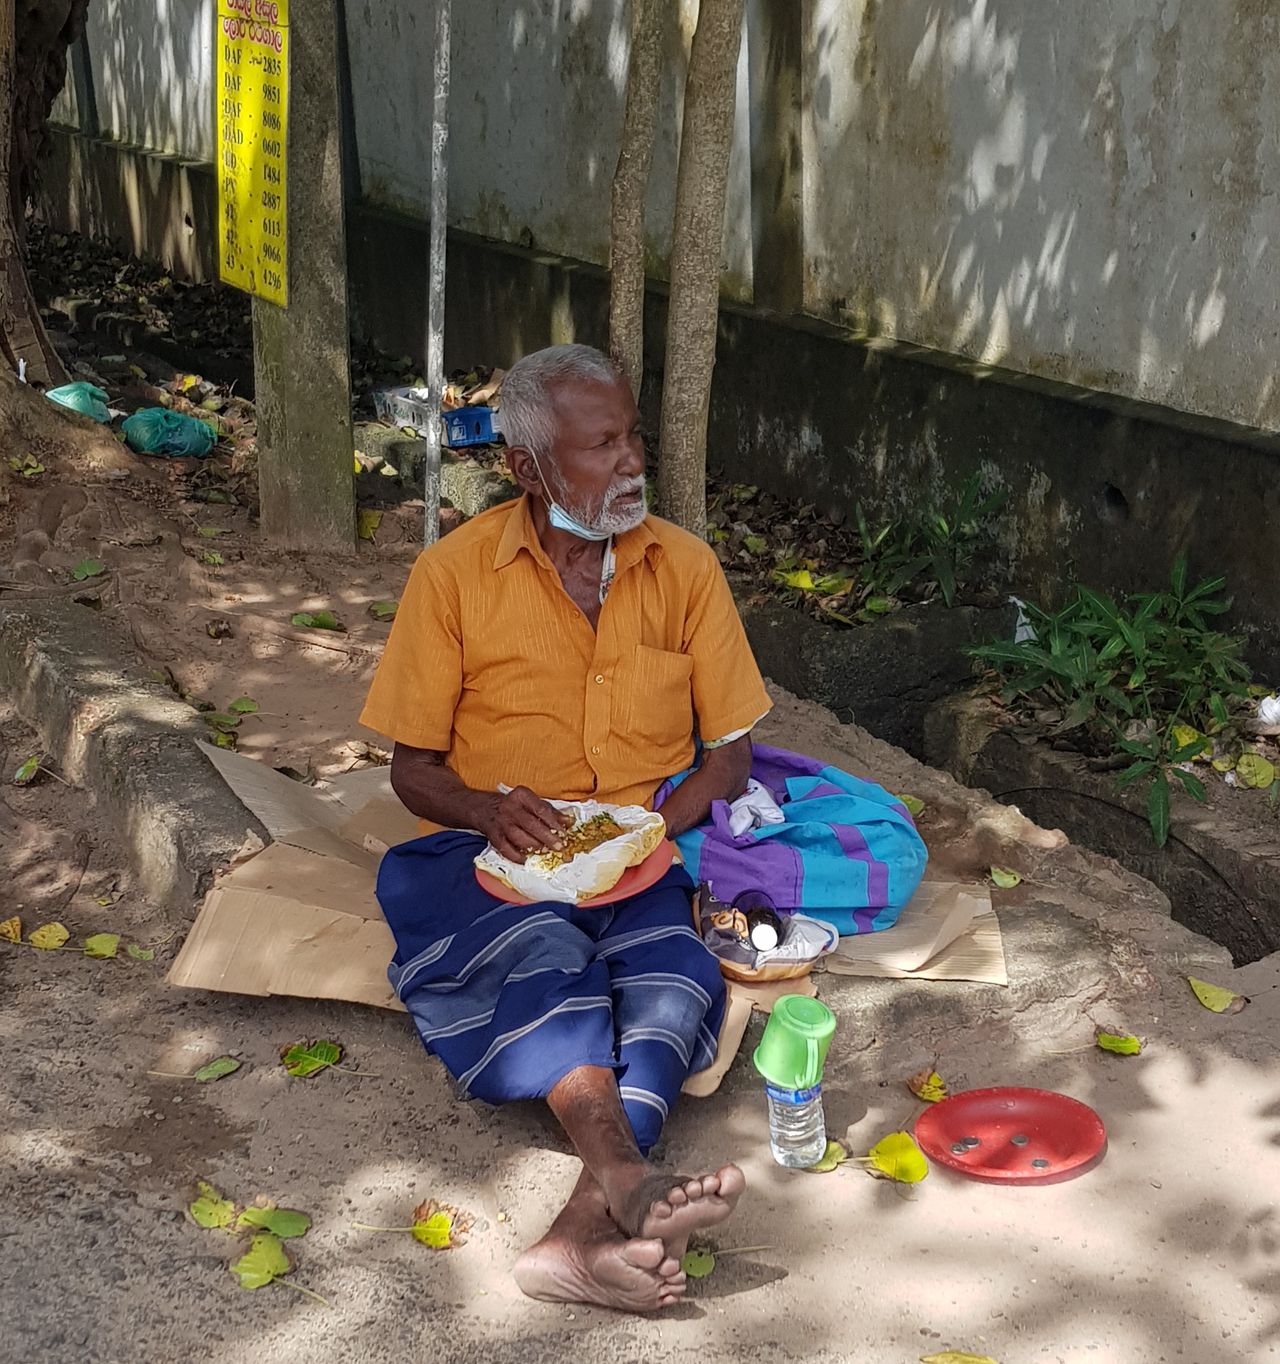 Ubogi Lankijczyk żyjący na ulicy. Anna mówi, że coraz więcej mieszkańców Sri Lanki decyduje się prosić o pieniądze przechodniów